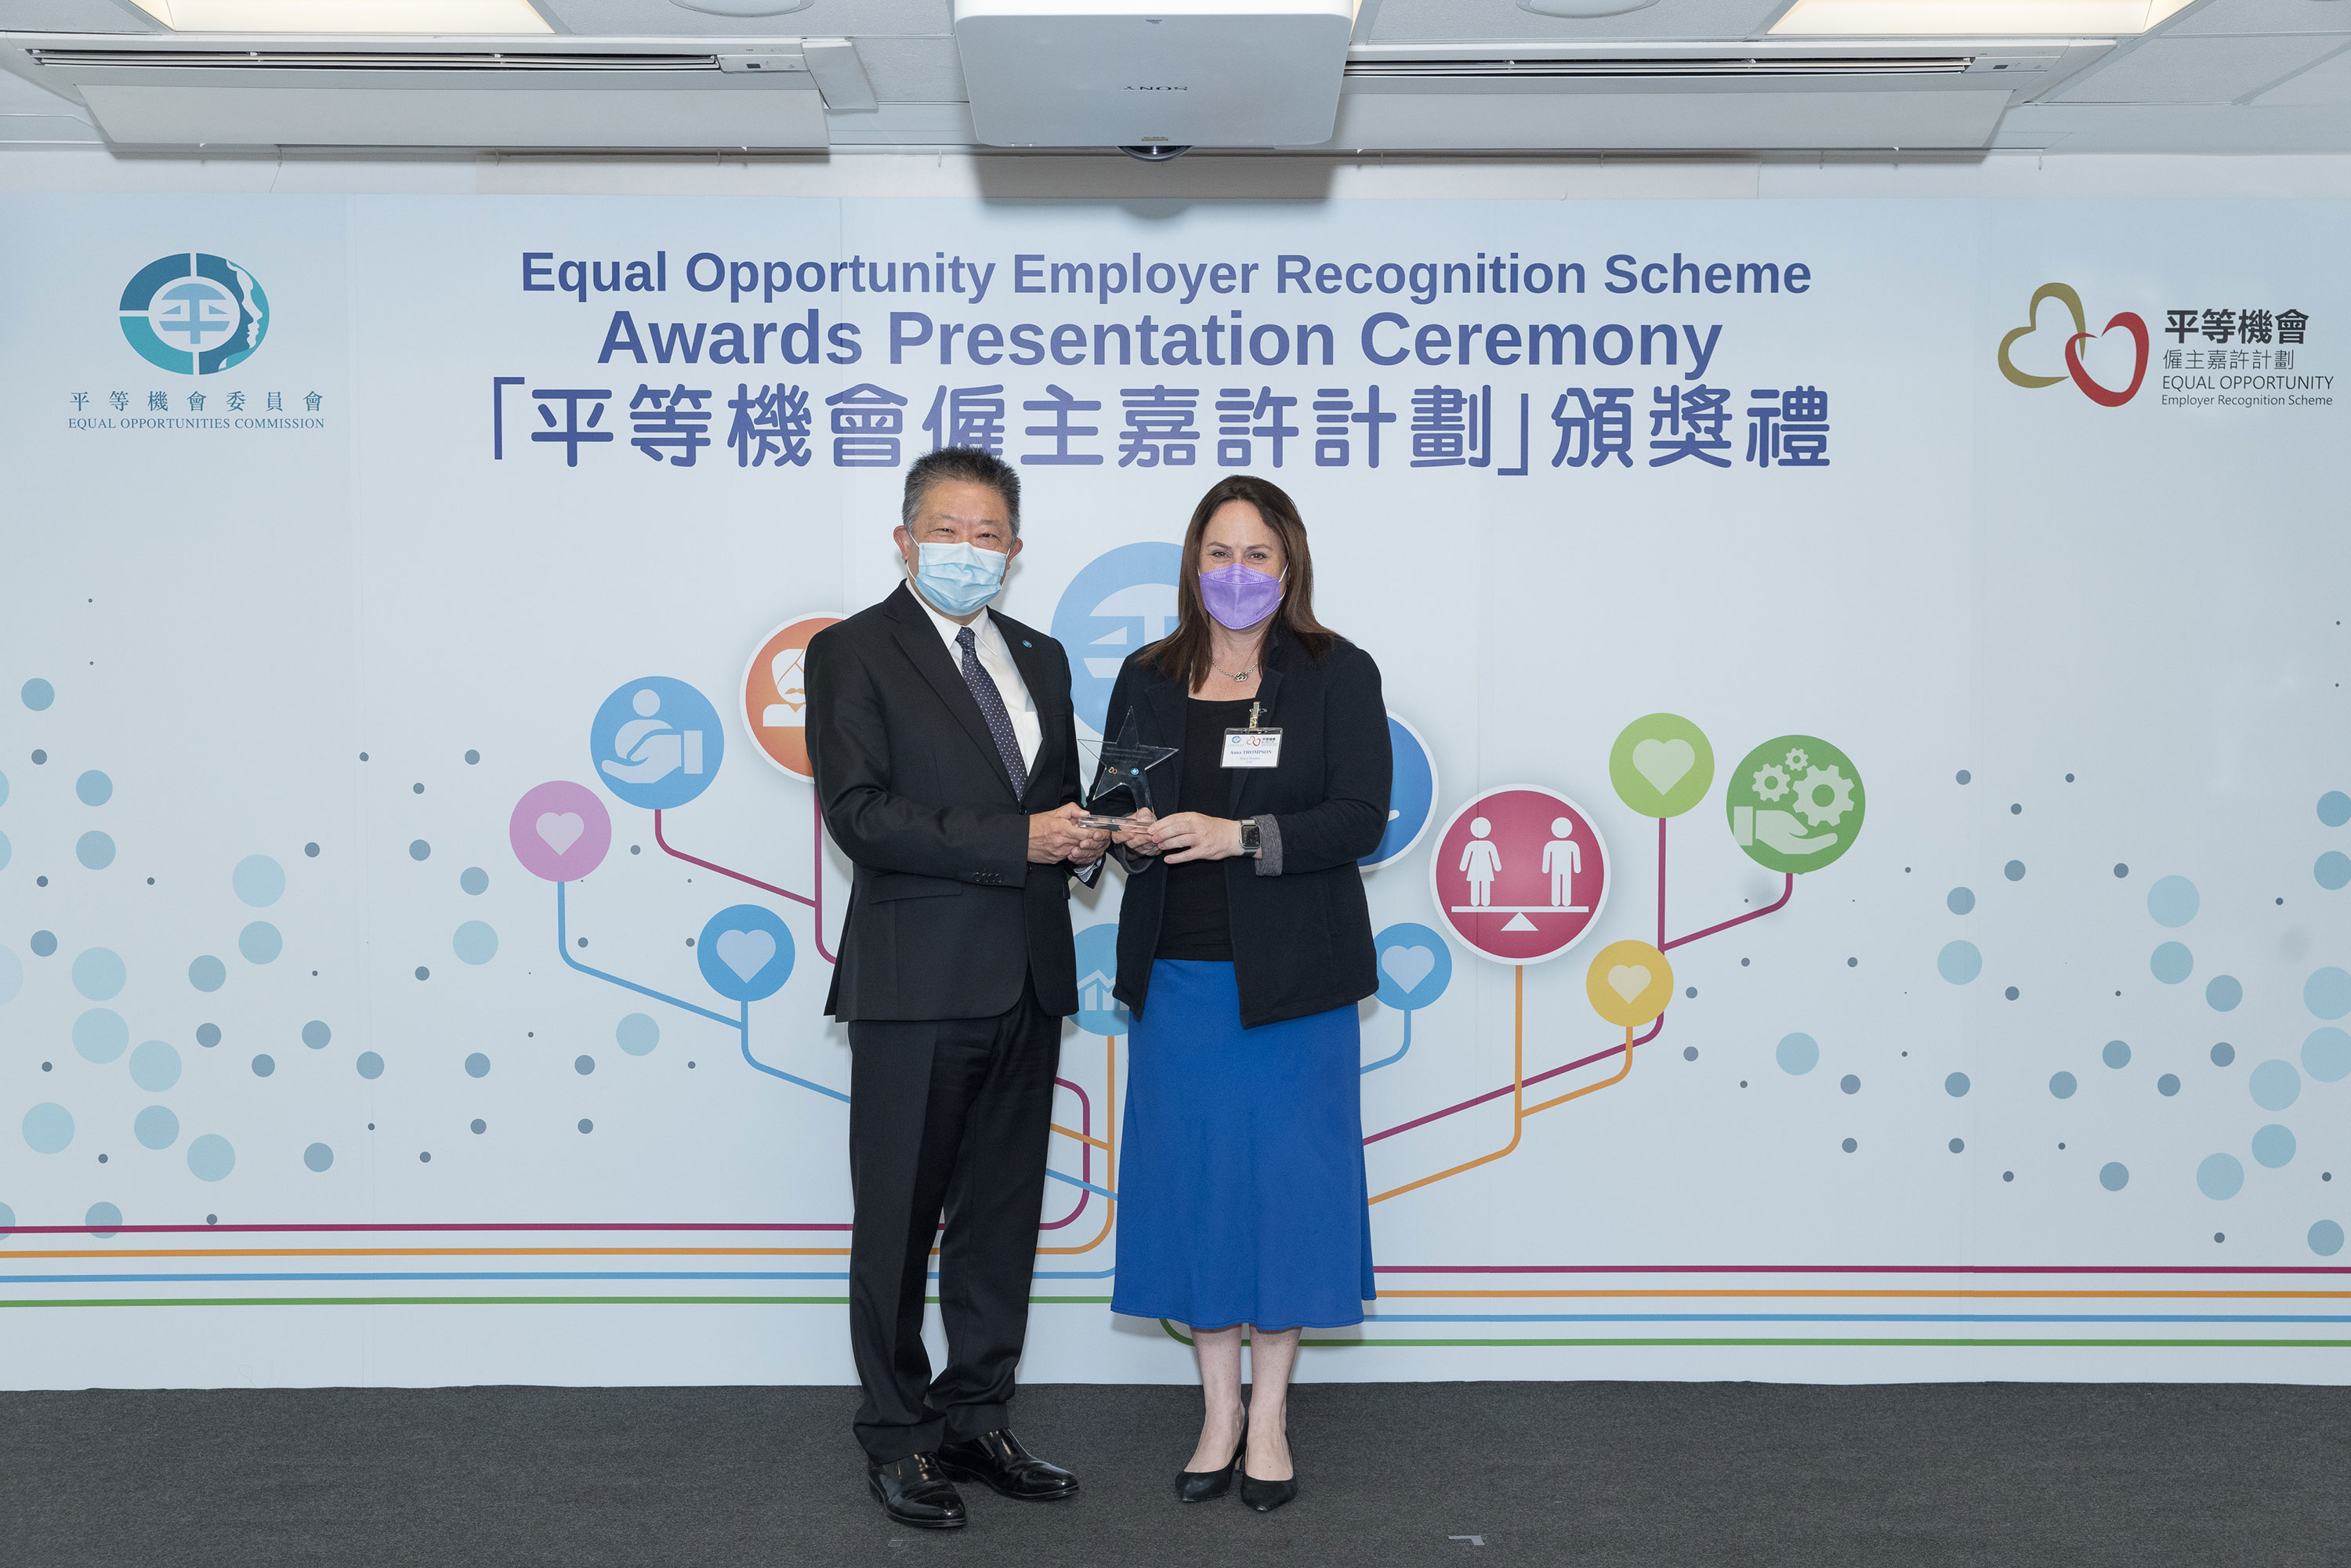 平機會主席朱敏健先生, IDS (左)頒發紀念品予出任平等機會僱主嘉許計劃評審團成員的平機會委員唐安娜女士(右)。